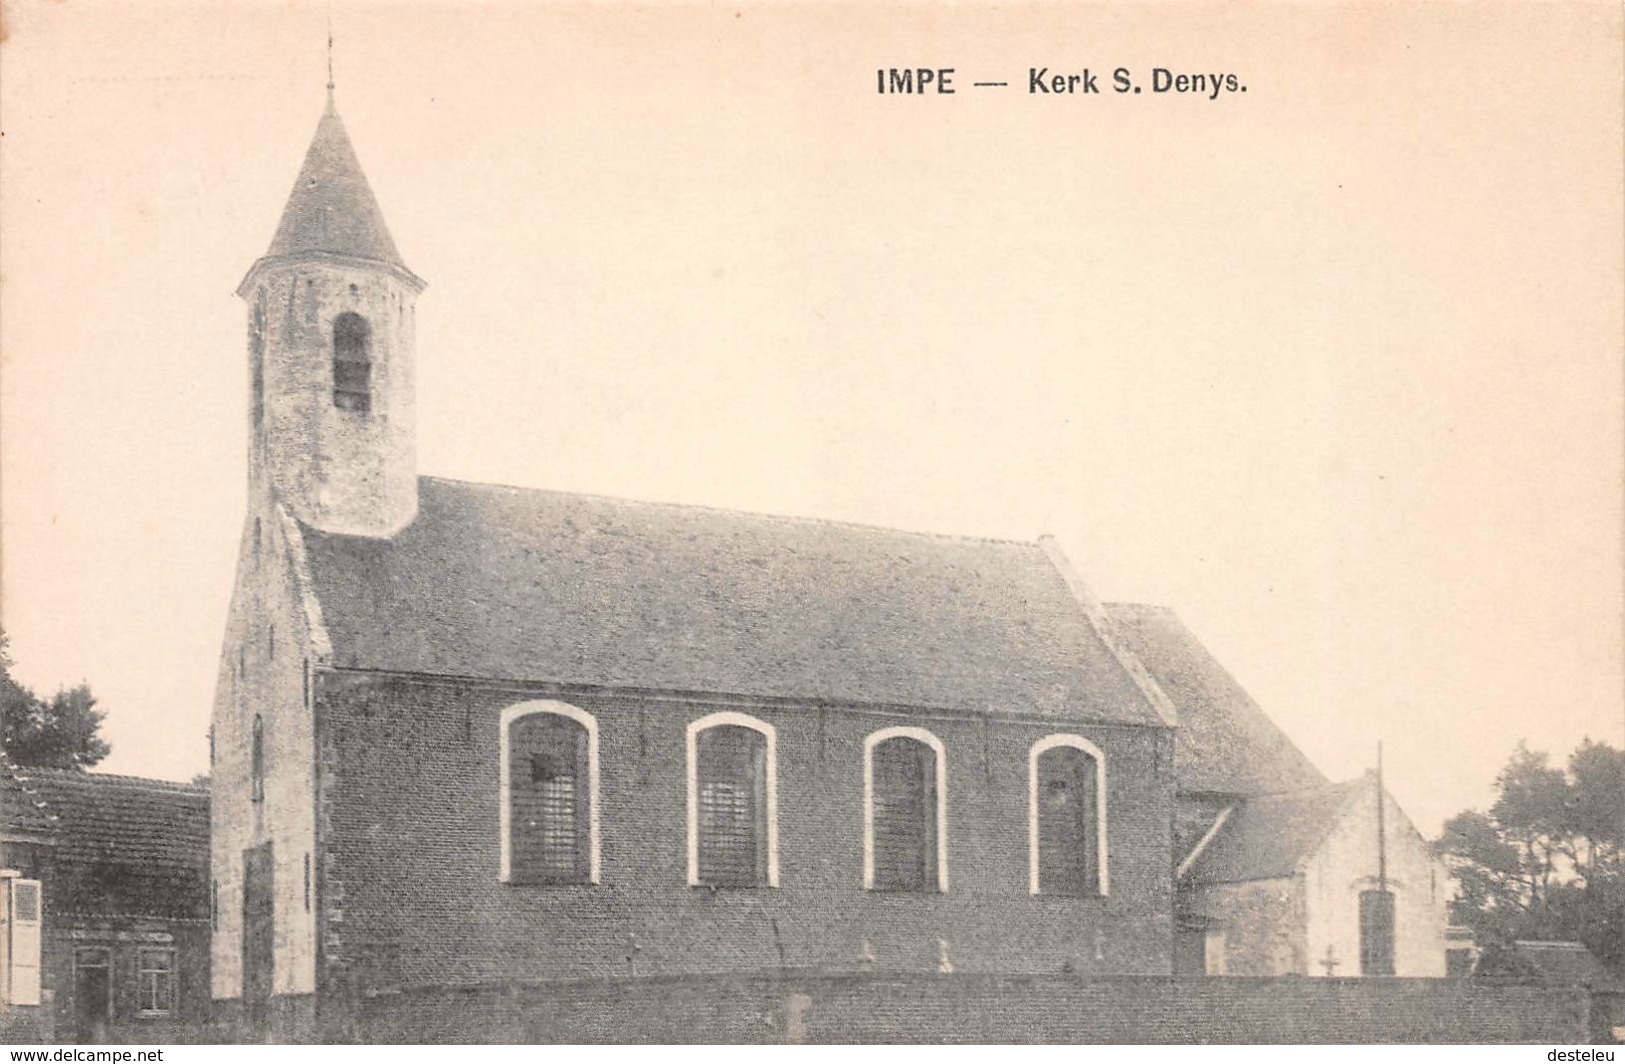 Kerk S. Denys - Impe - Lede